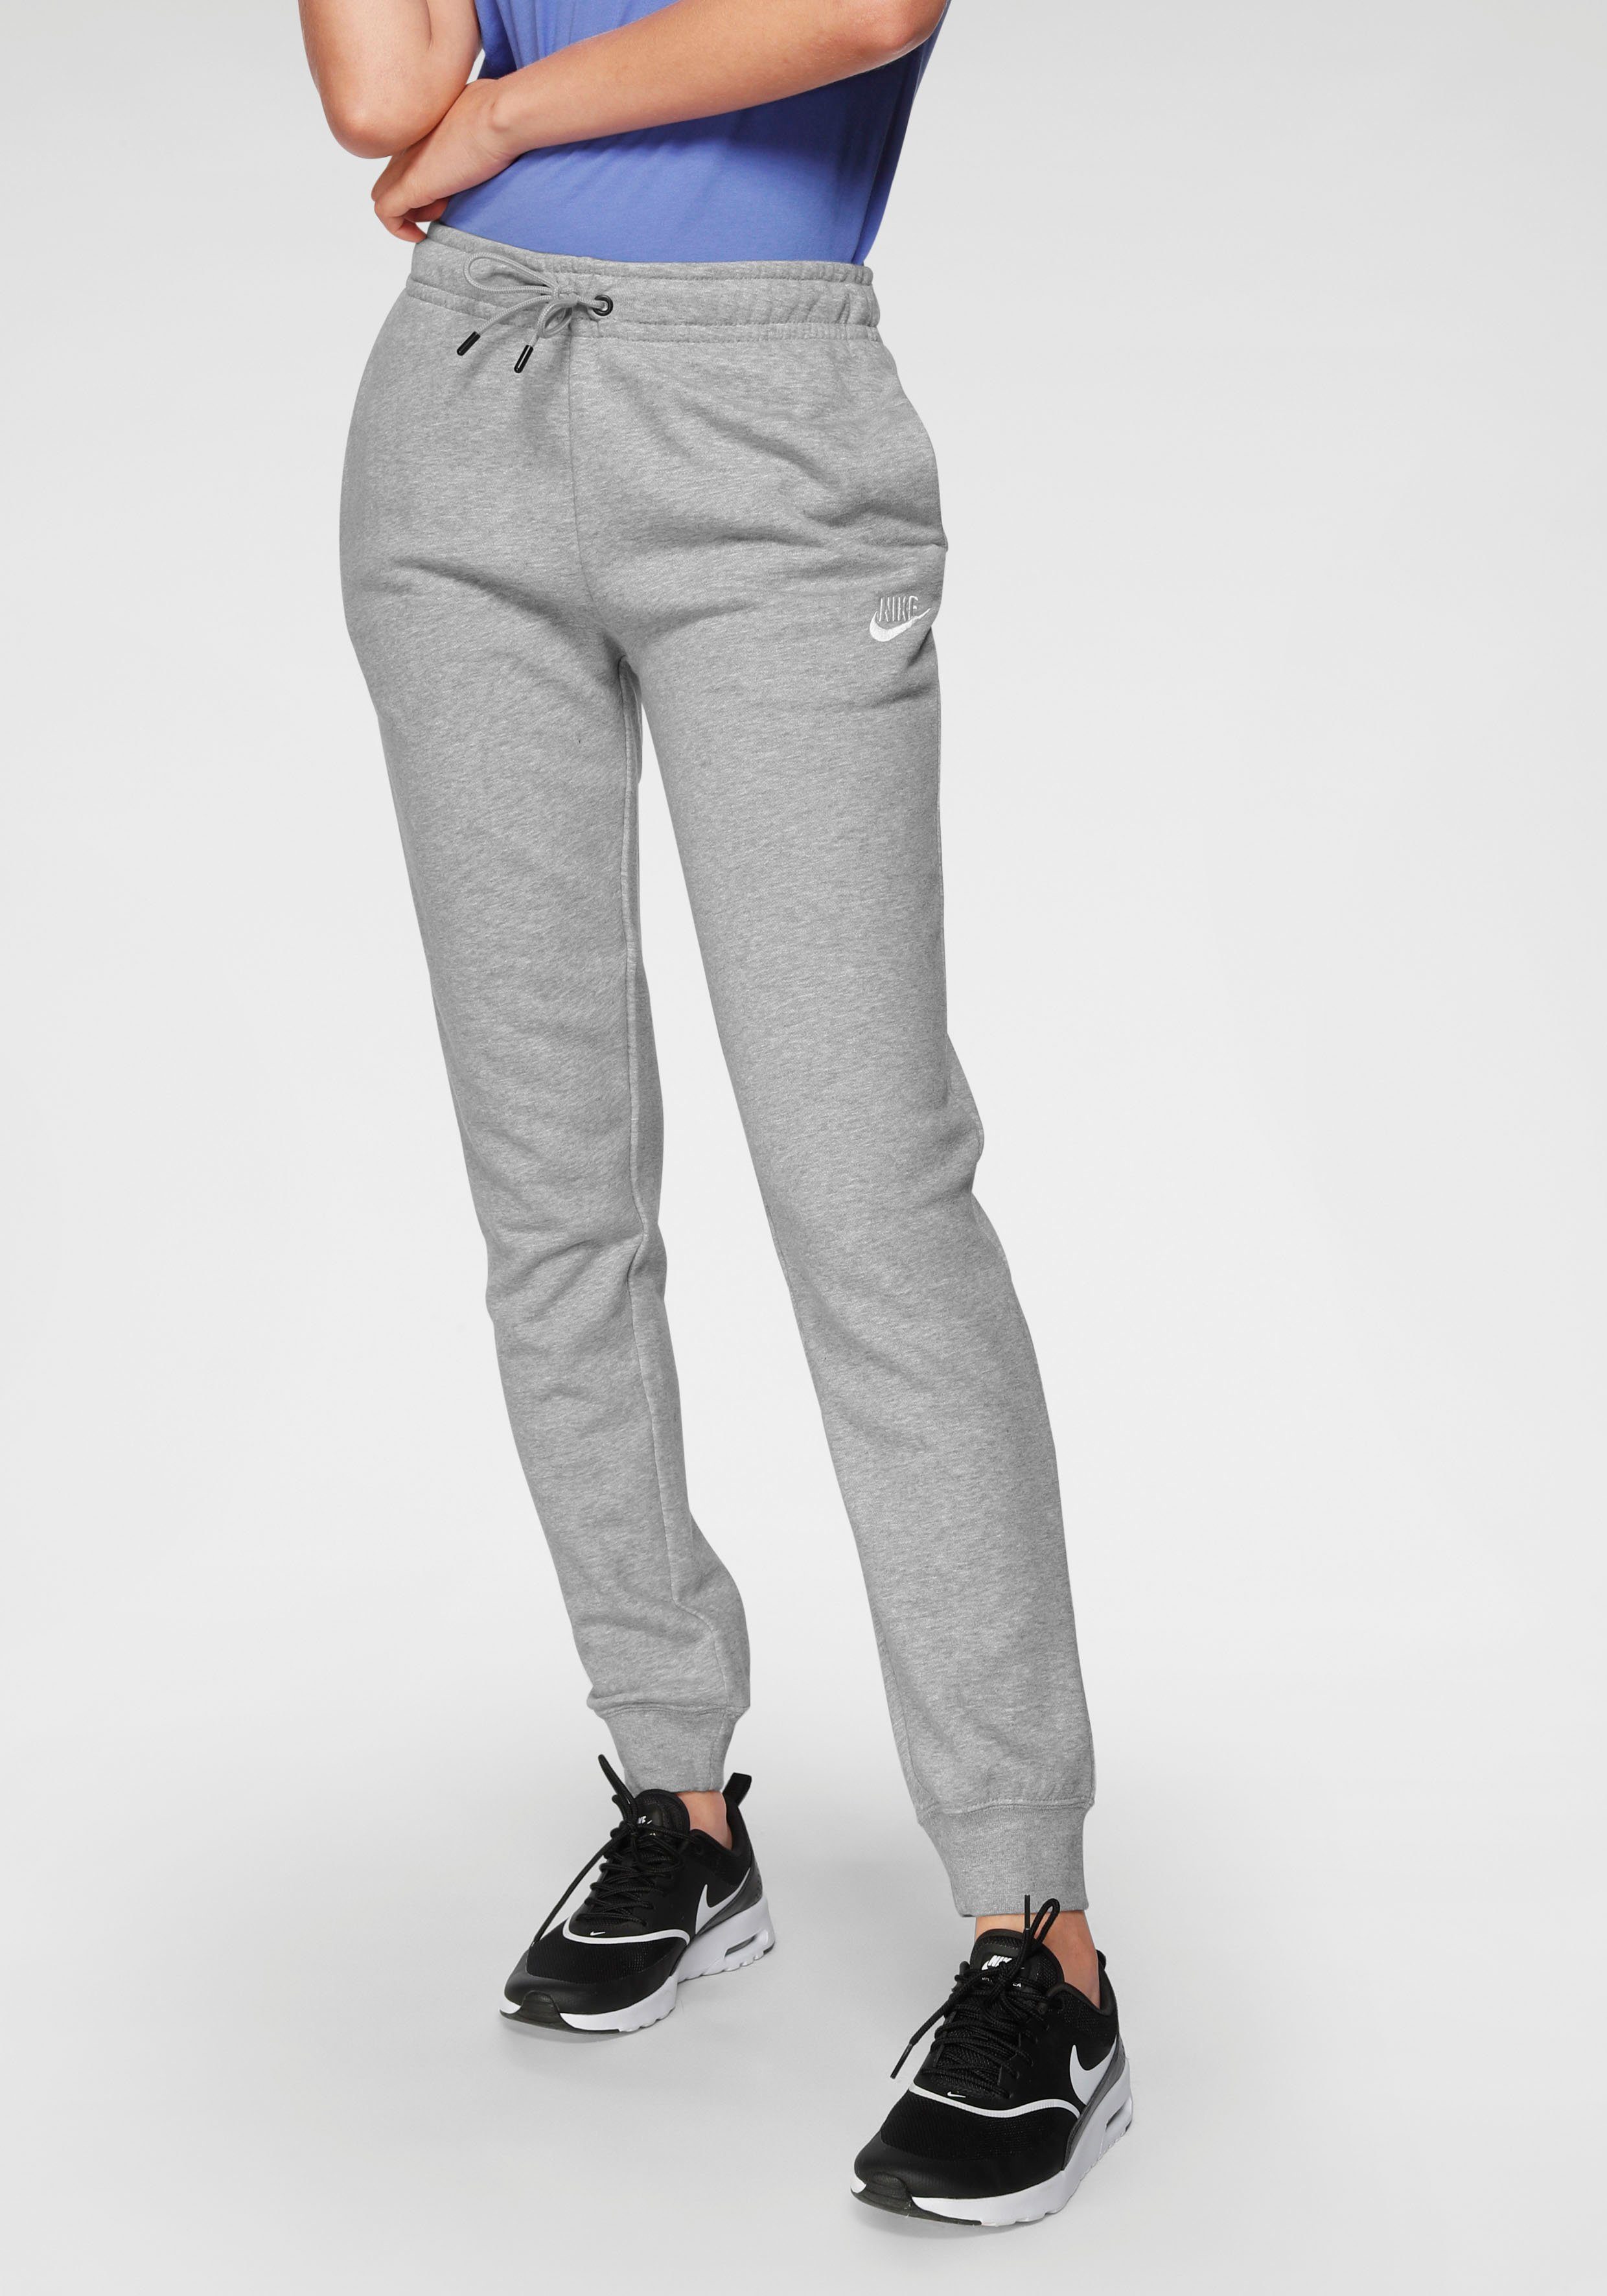 Nike Sportswear Jogginghose ESSENTIAL PANTS WOMENS grau-meliert FLEECE